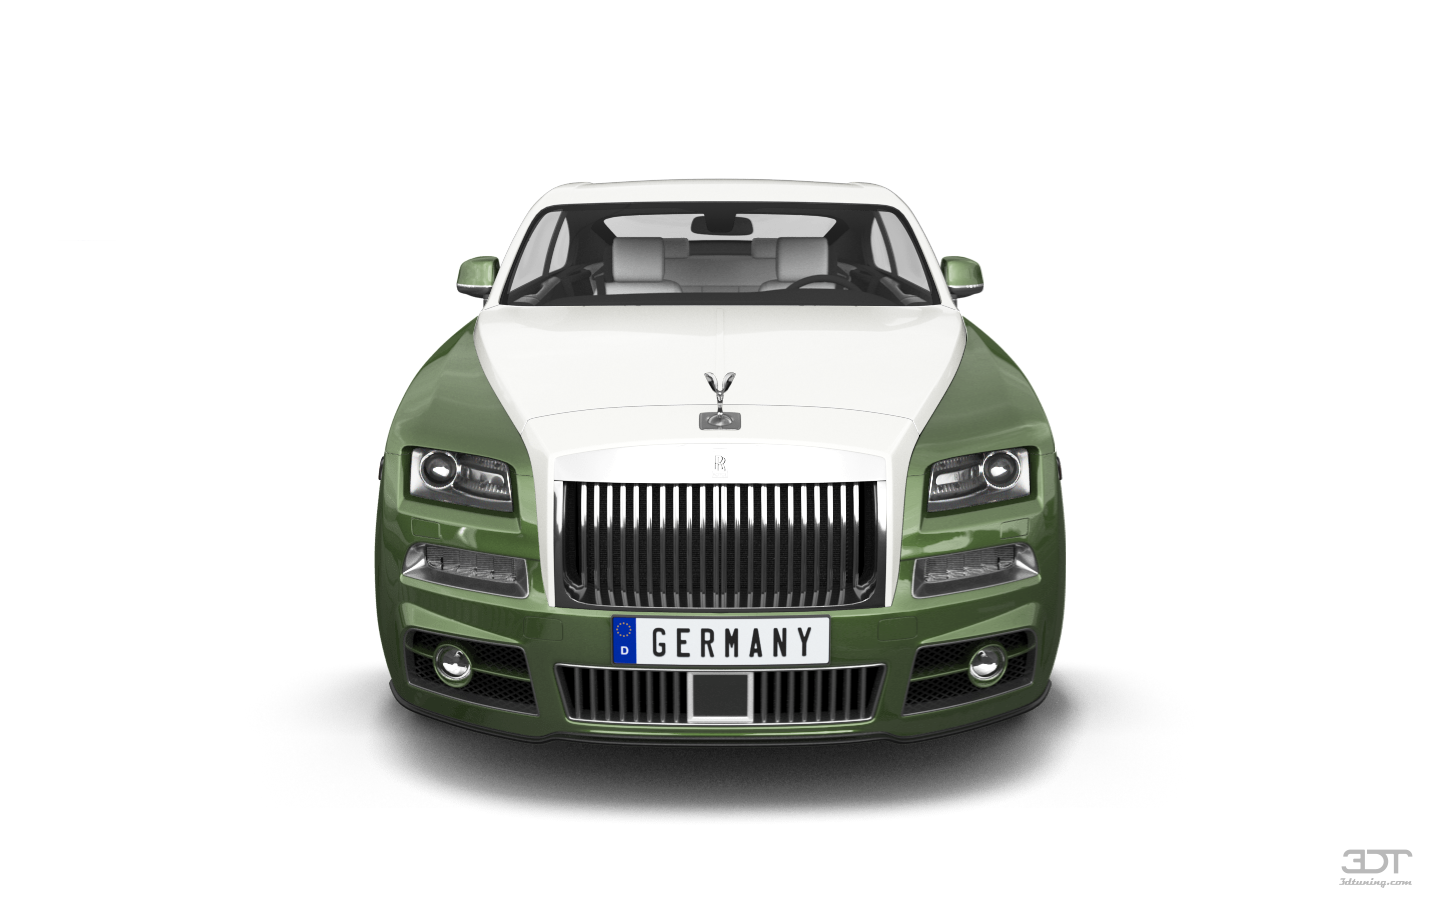 Rolls Royce Wraith'14